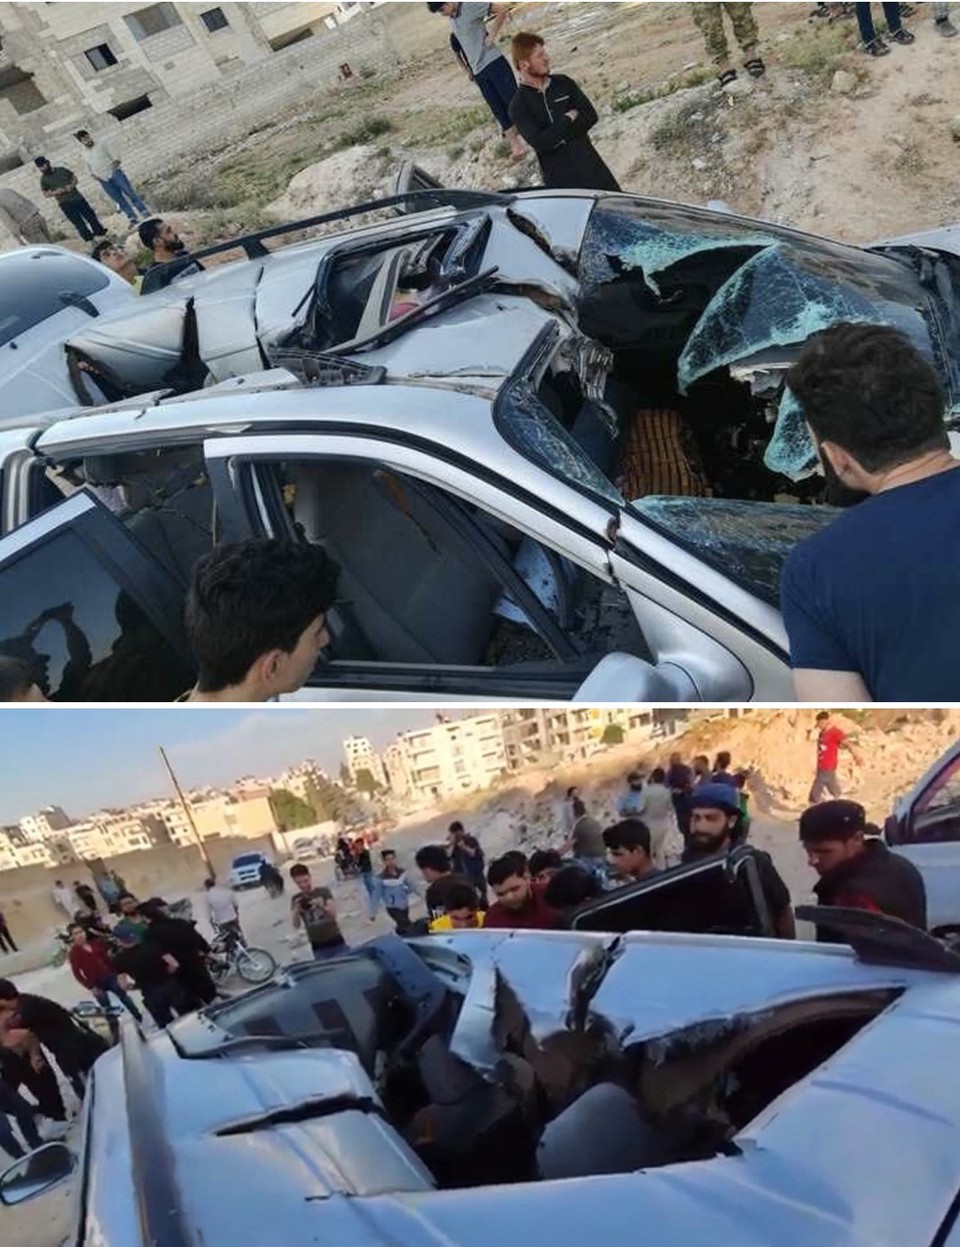 그림 3. 2020년 6월 14일 시리아의 이드립에서 촬영된 알 카에다 간부 칼리드 무스타파 알 아루리가 최후로 탔던 차량의 모습이다. 헬파이어R9X 미사일이 칼날을 펴고 날아들었음을 보여주는 ✶ 모양의 흔적이 남아있다.